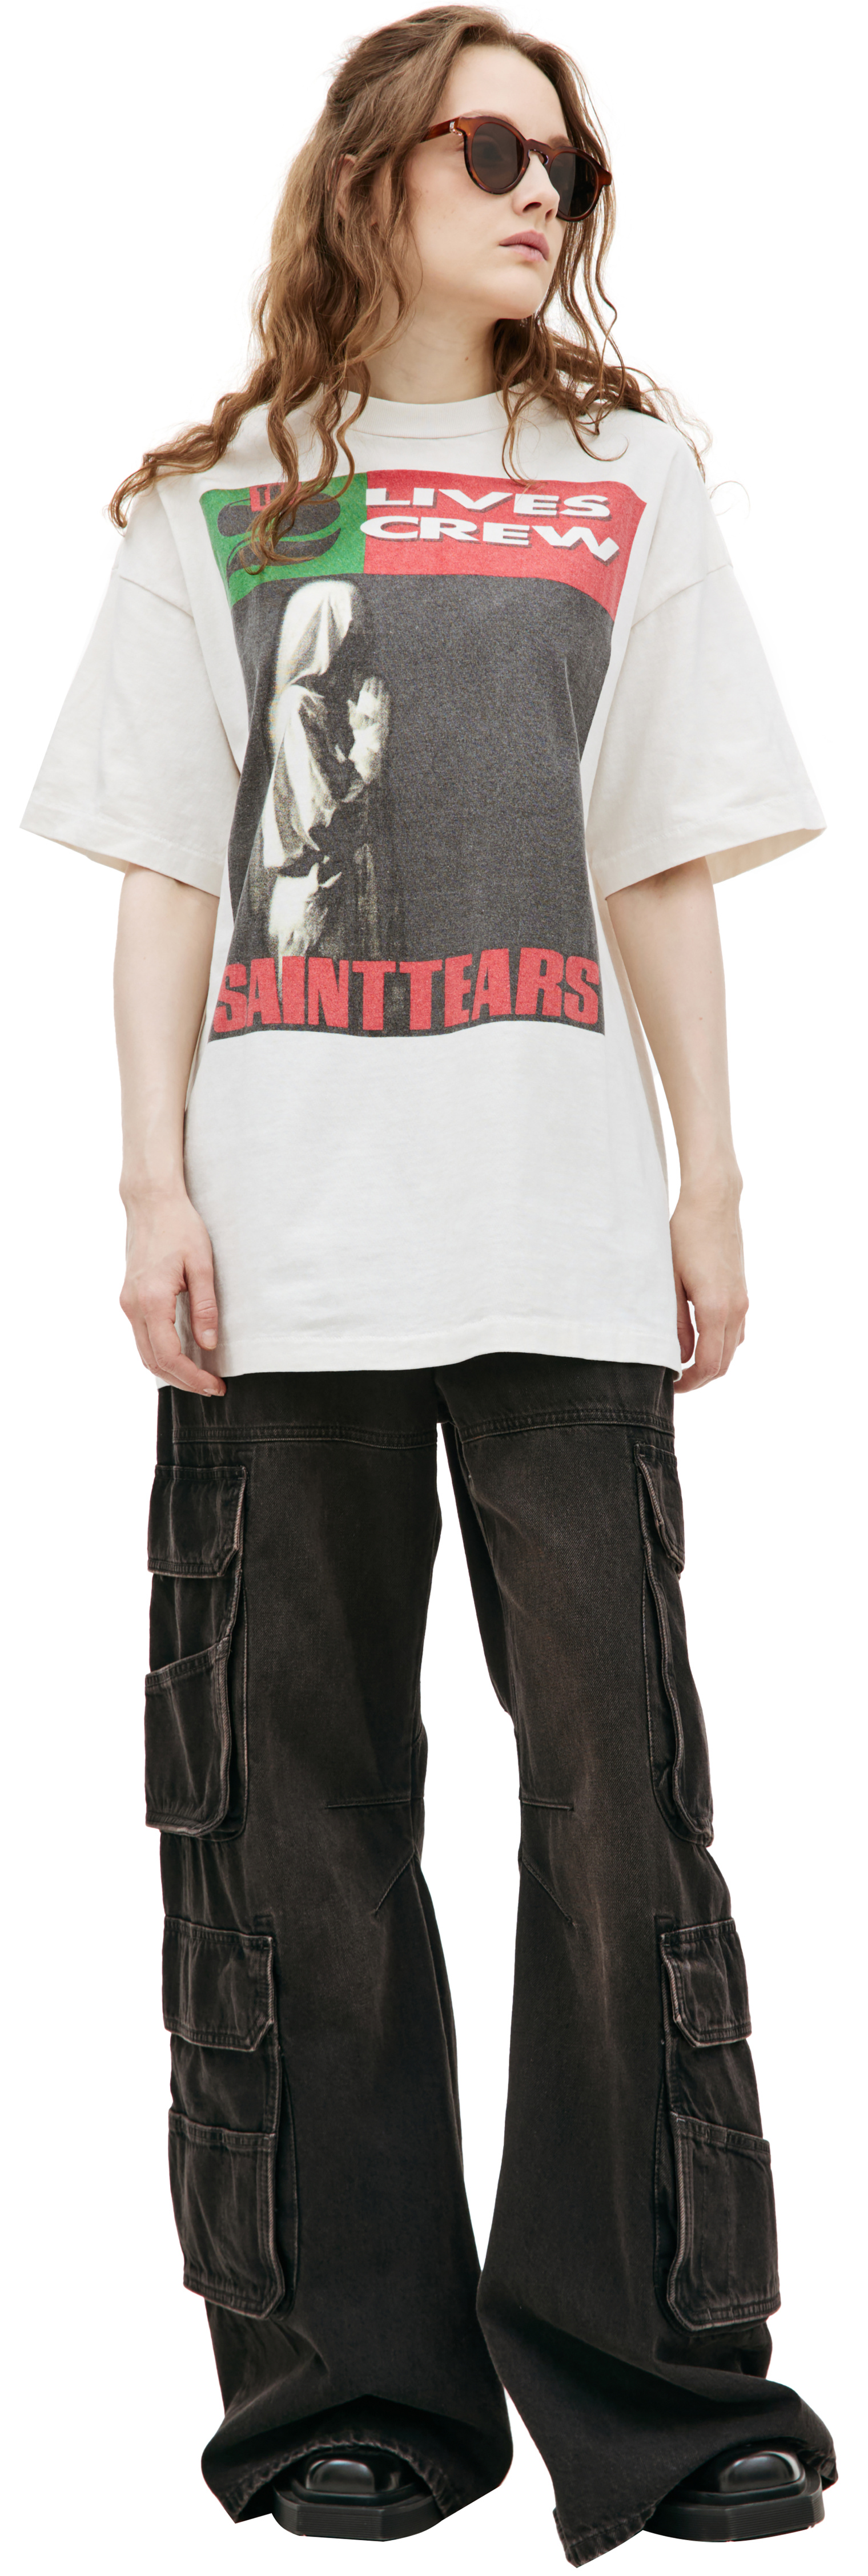 Saint Mxxxxxx SAINT TEARS printed t-shirt